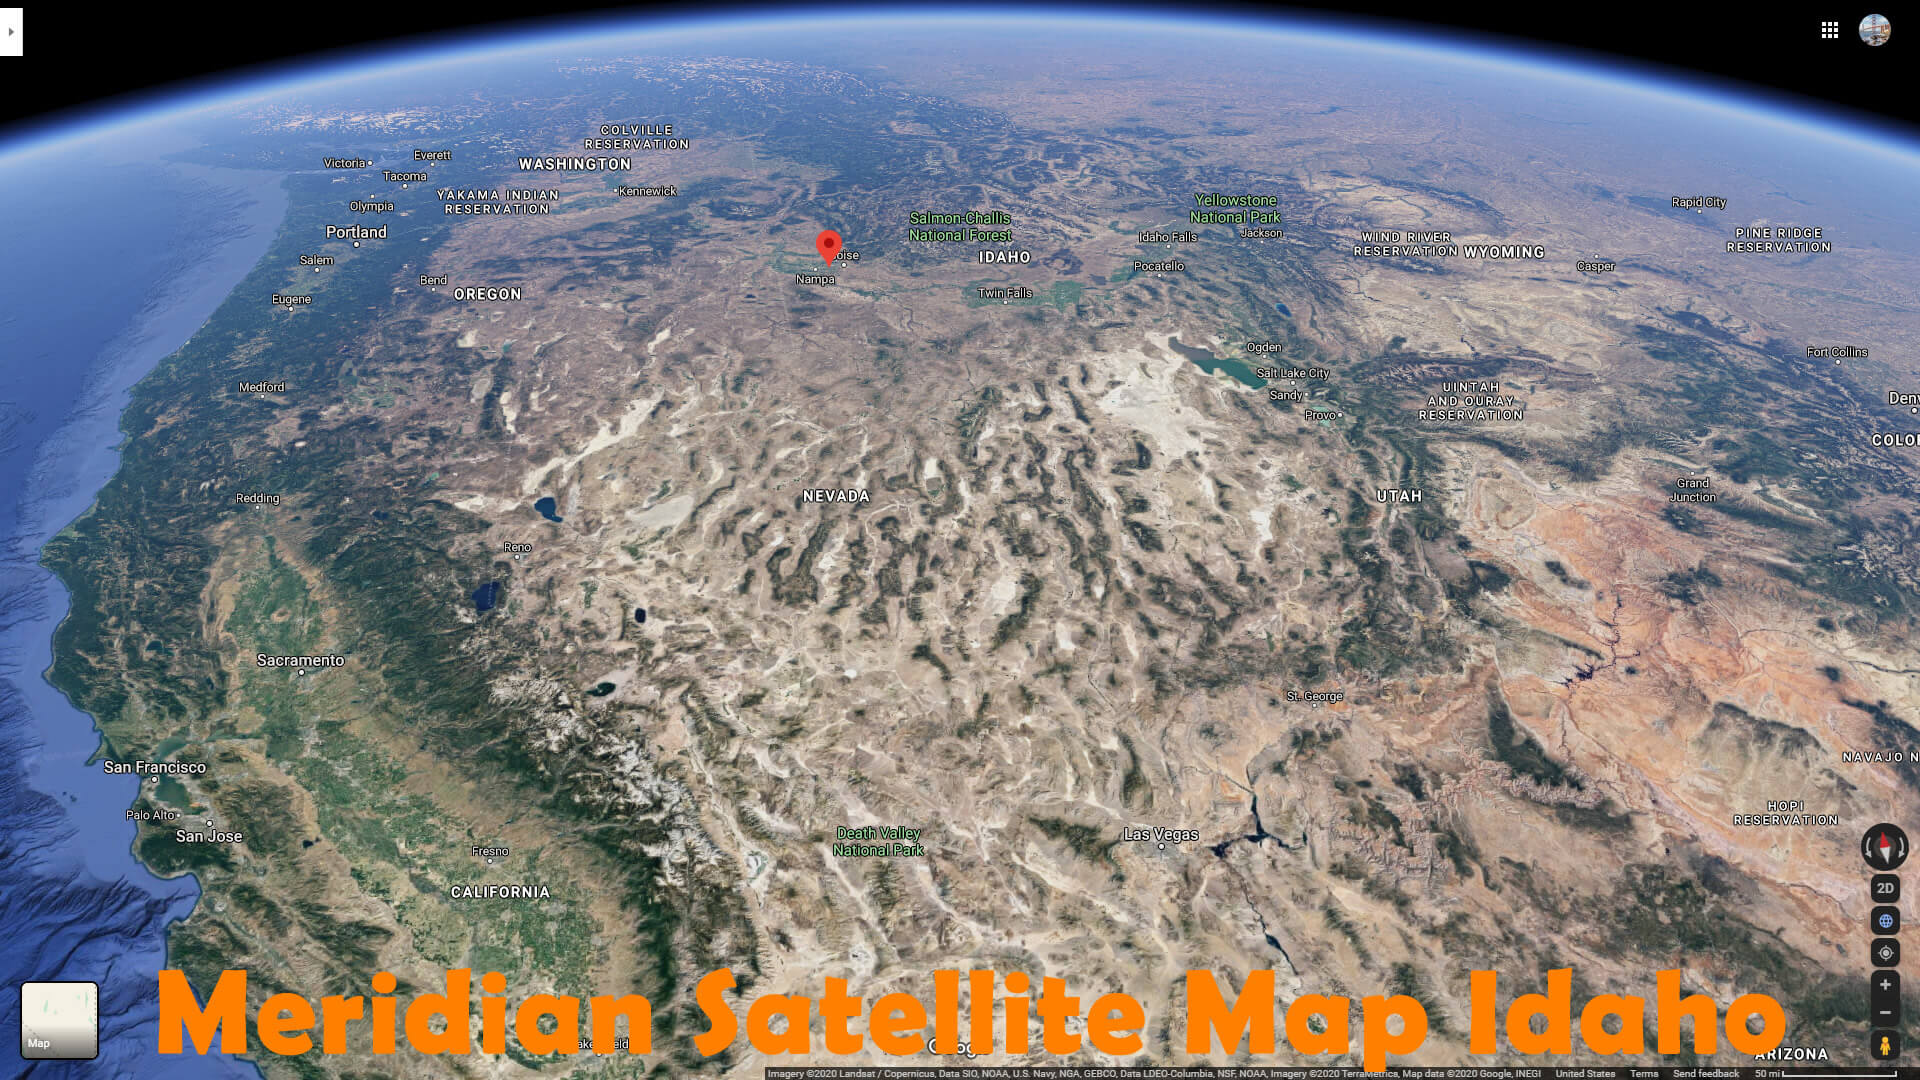 Meridian Satellite Map Idaho